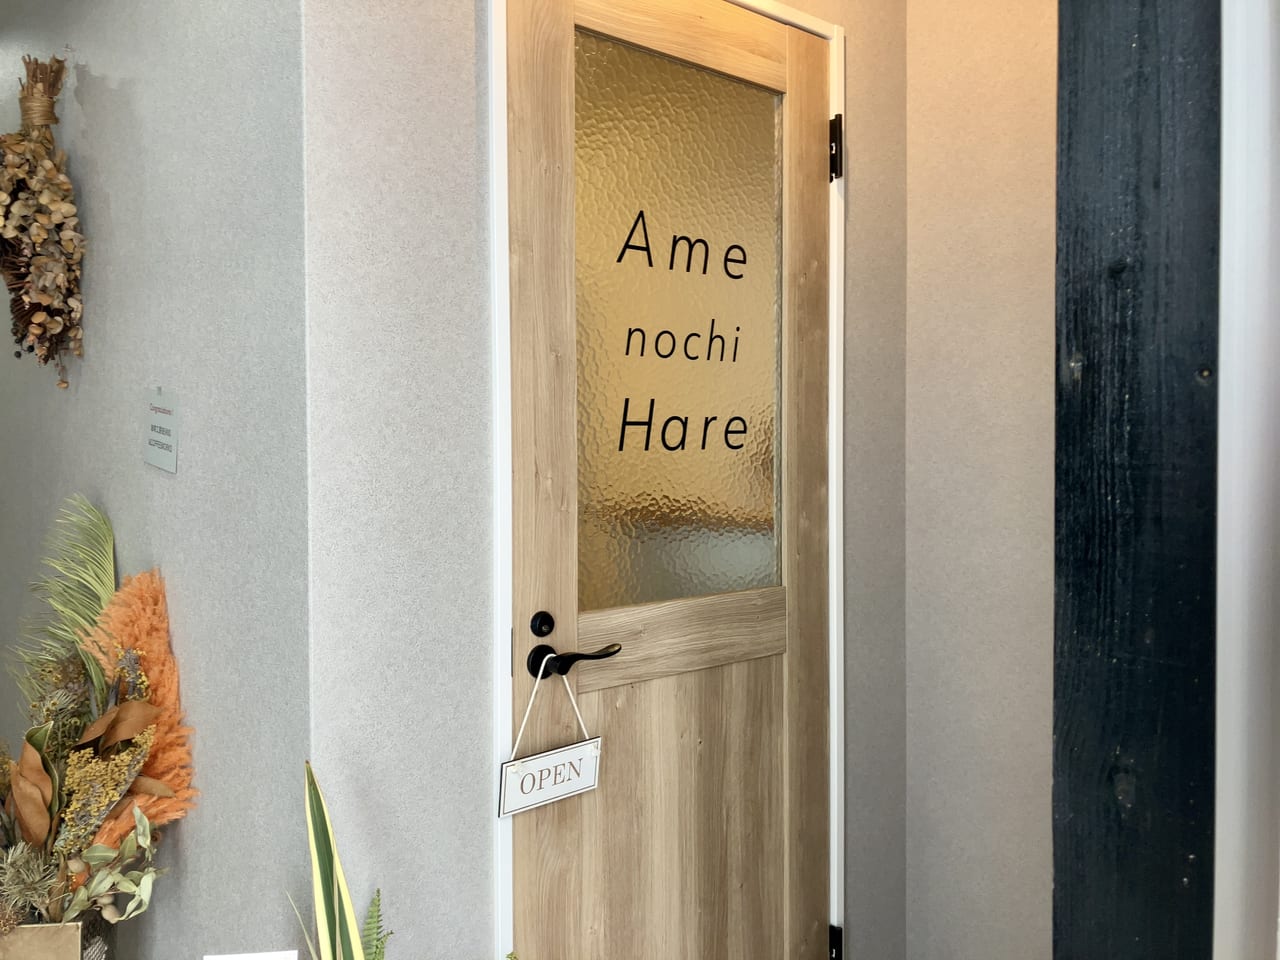 ファイターズ通りにオープンした「Ame nochi hare」で、身体のメンテナンスをしてみてはいかがですか